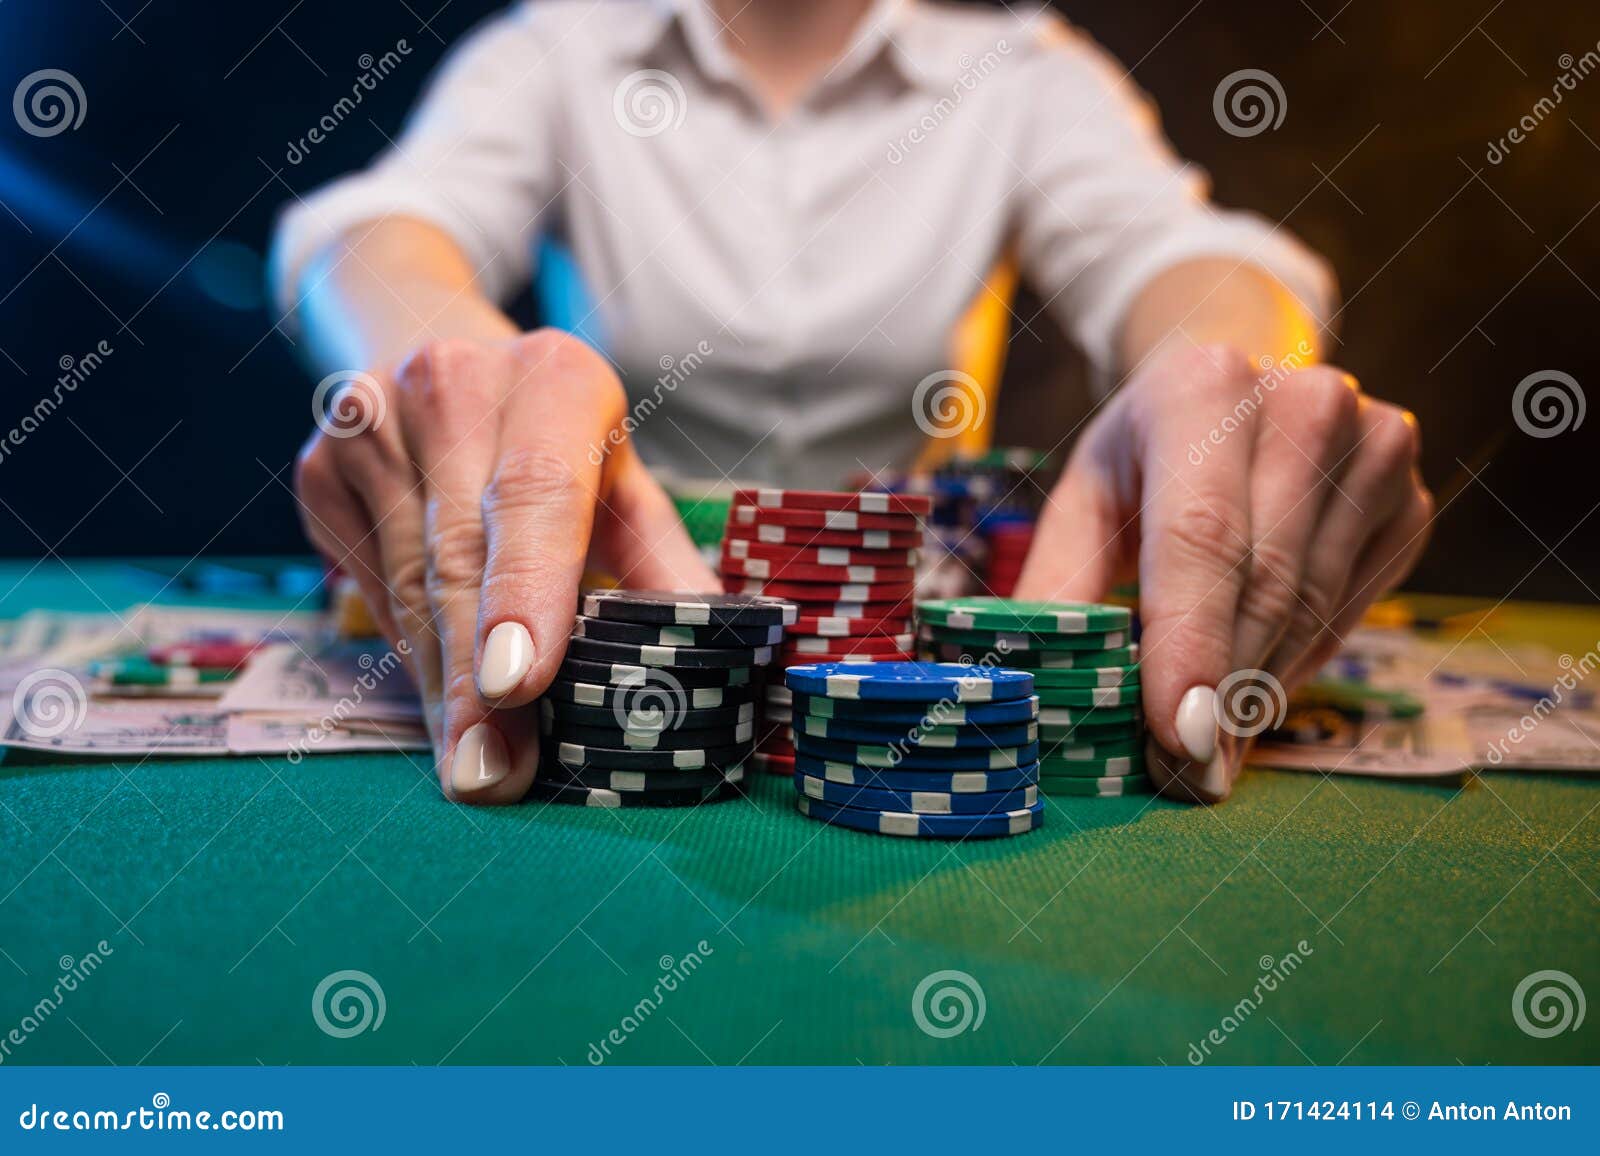 Een Spel in Een Casino, Een Speler Speelt Poker, Voedt Weddenschappen, Risico's Een Zakelijk Spel Stock Foto - Image of kaart: 171424114